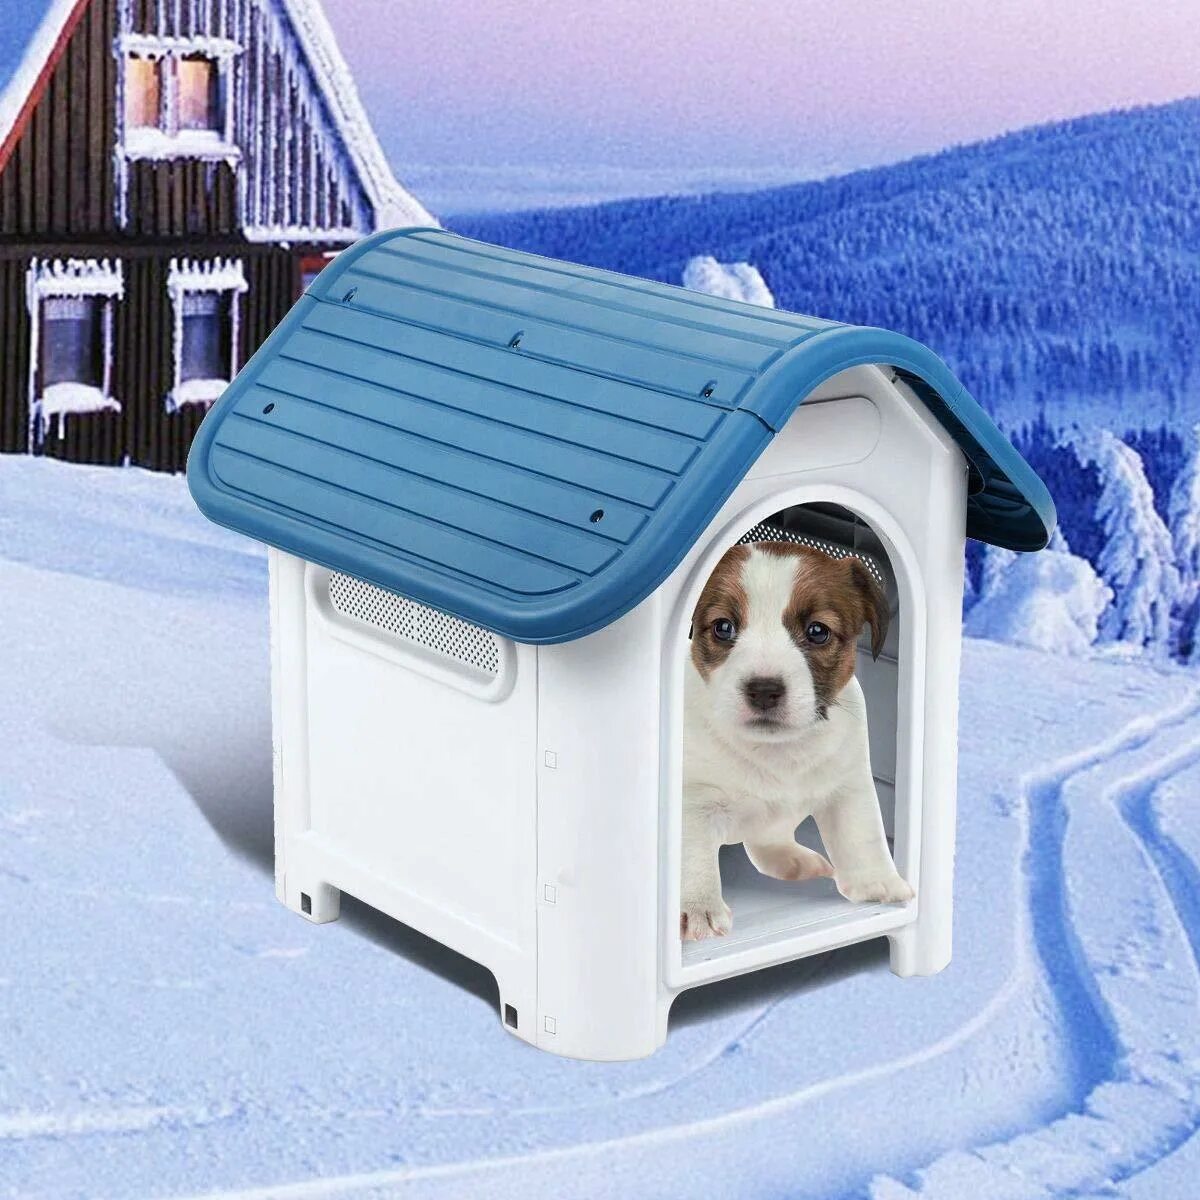 Pet дом. Будка для собаки зимняя. Пластиковый домик для собак. Будка для собаки пластик. Дворец для собаки.